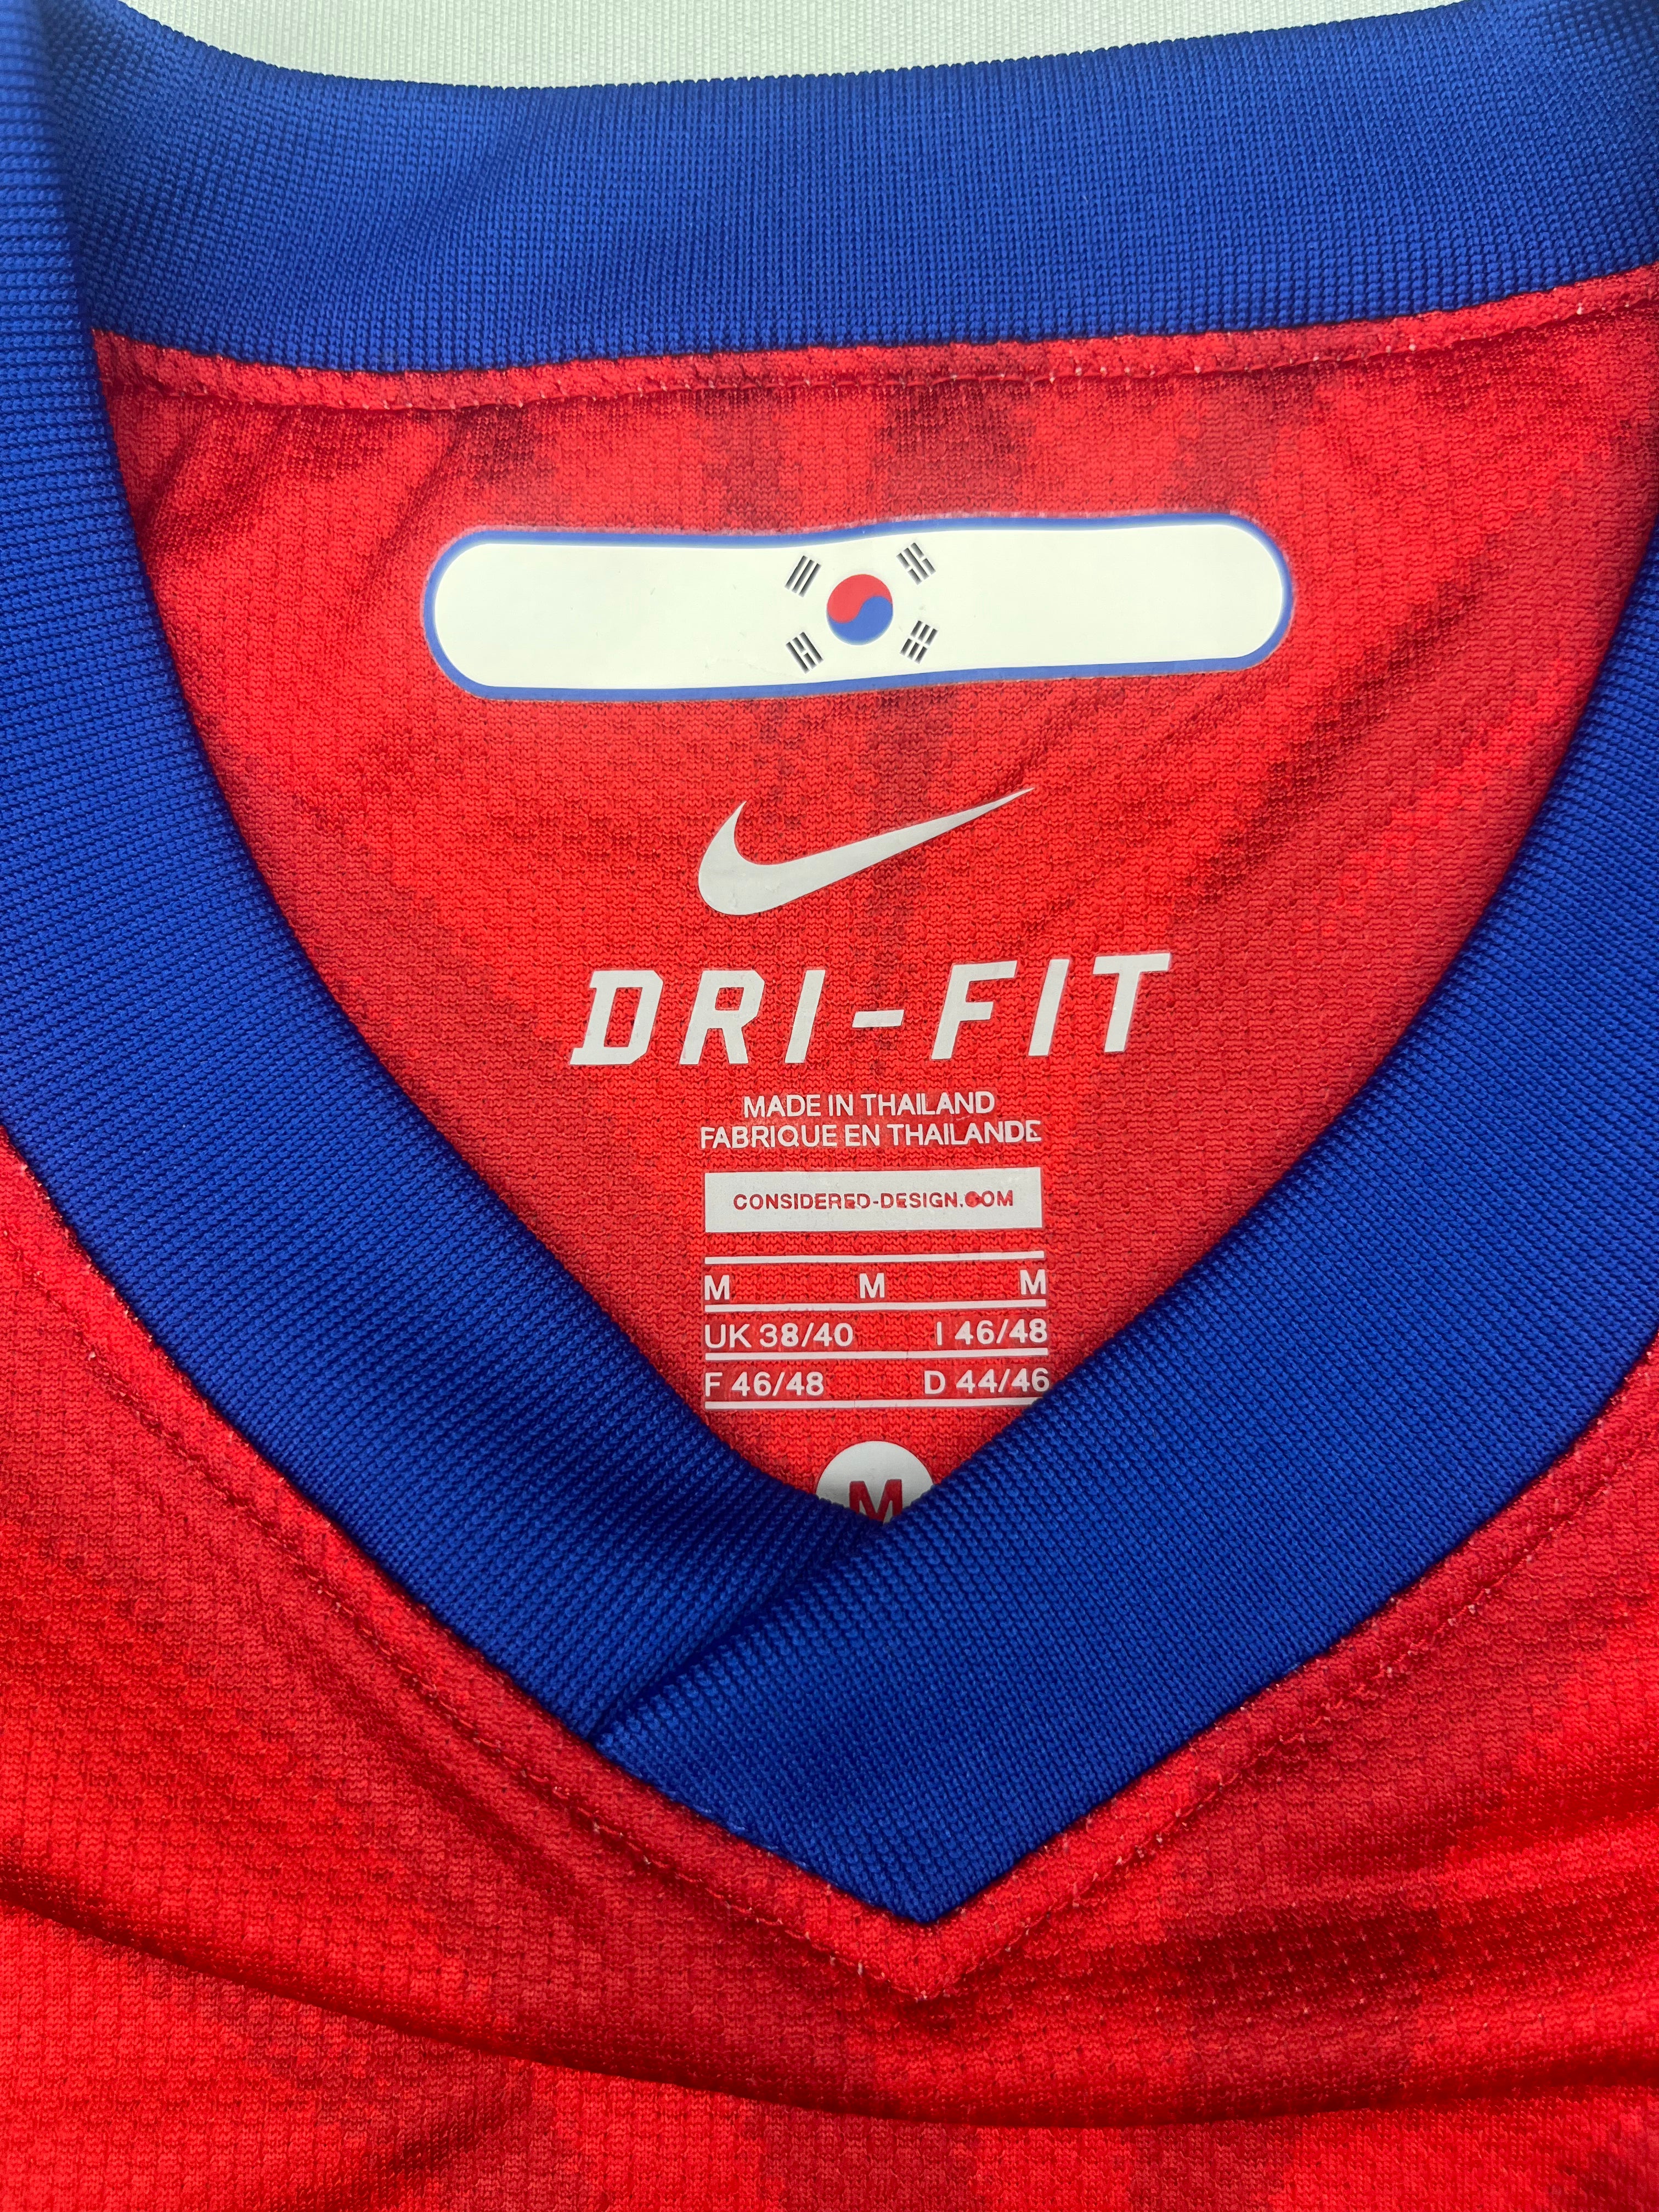 Camiseta local de Corea del Sur 2010/11 (M) 8.5/10